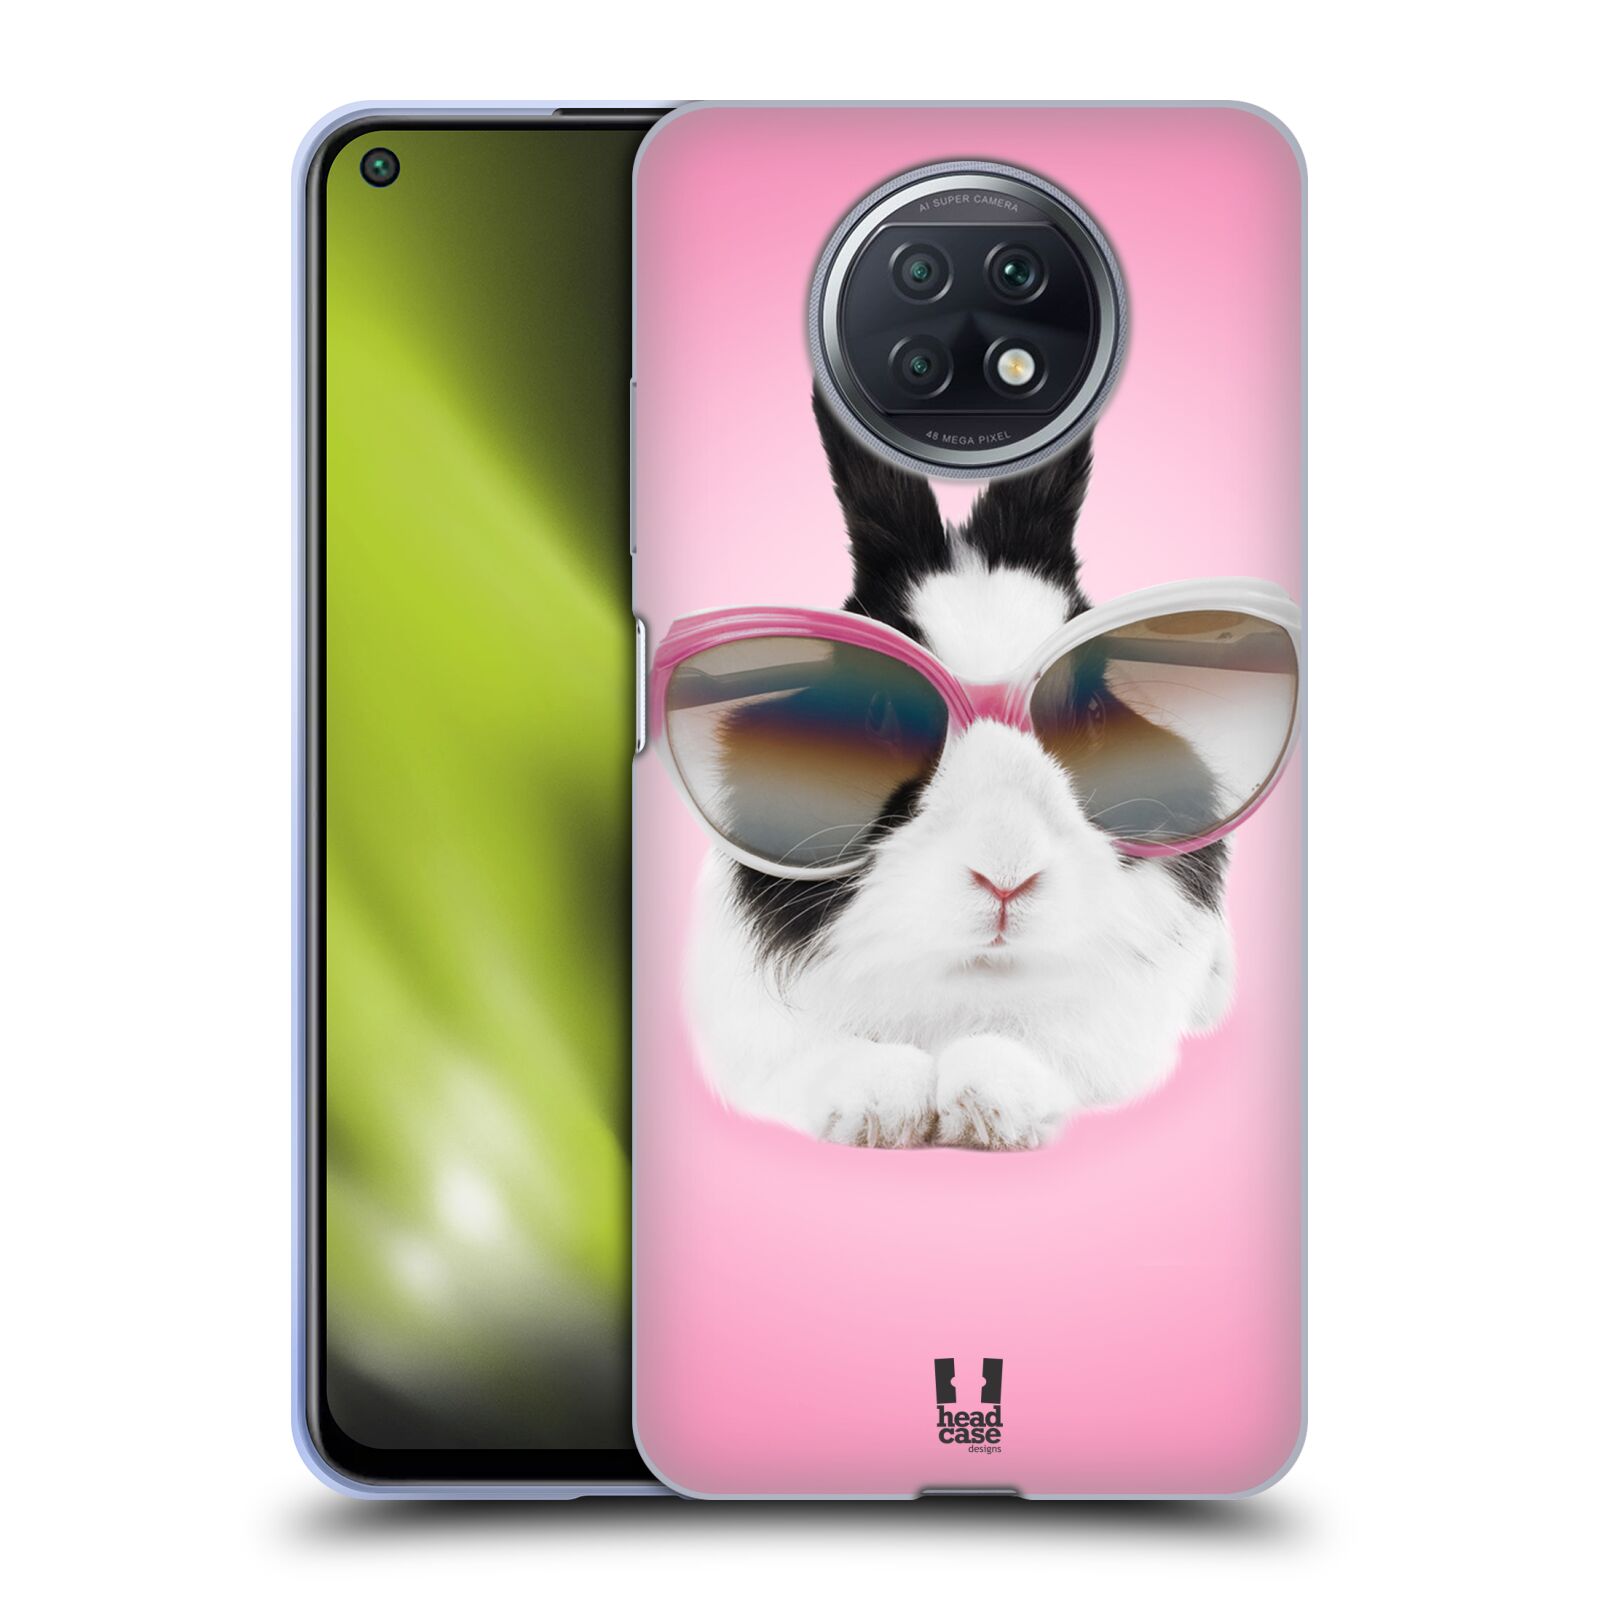 Plastový obal HEAD CASE na mobil Xiaomi Redmi Note 9T vzor Legrační zvířátka roztomilý králíček s brýlemi růžová